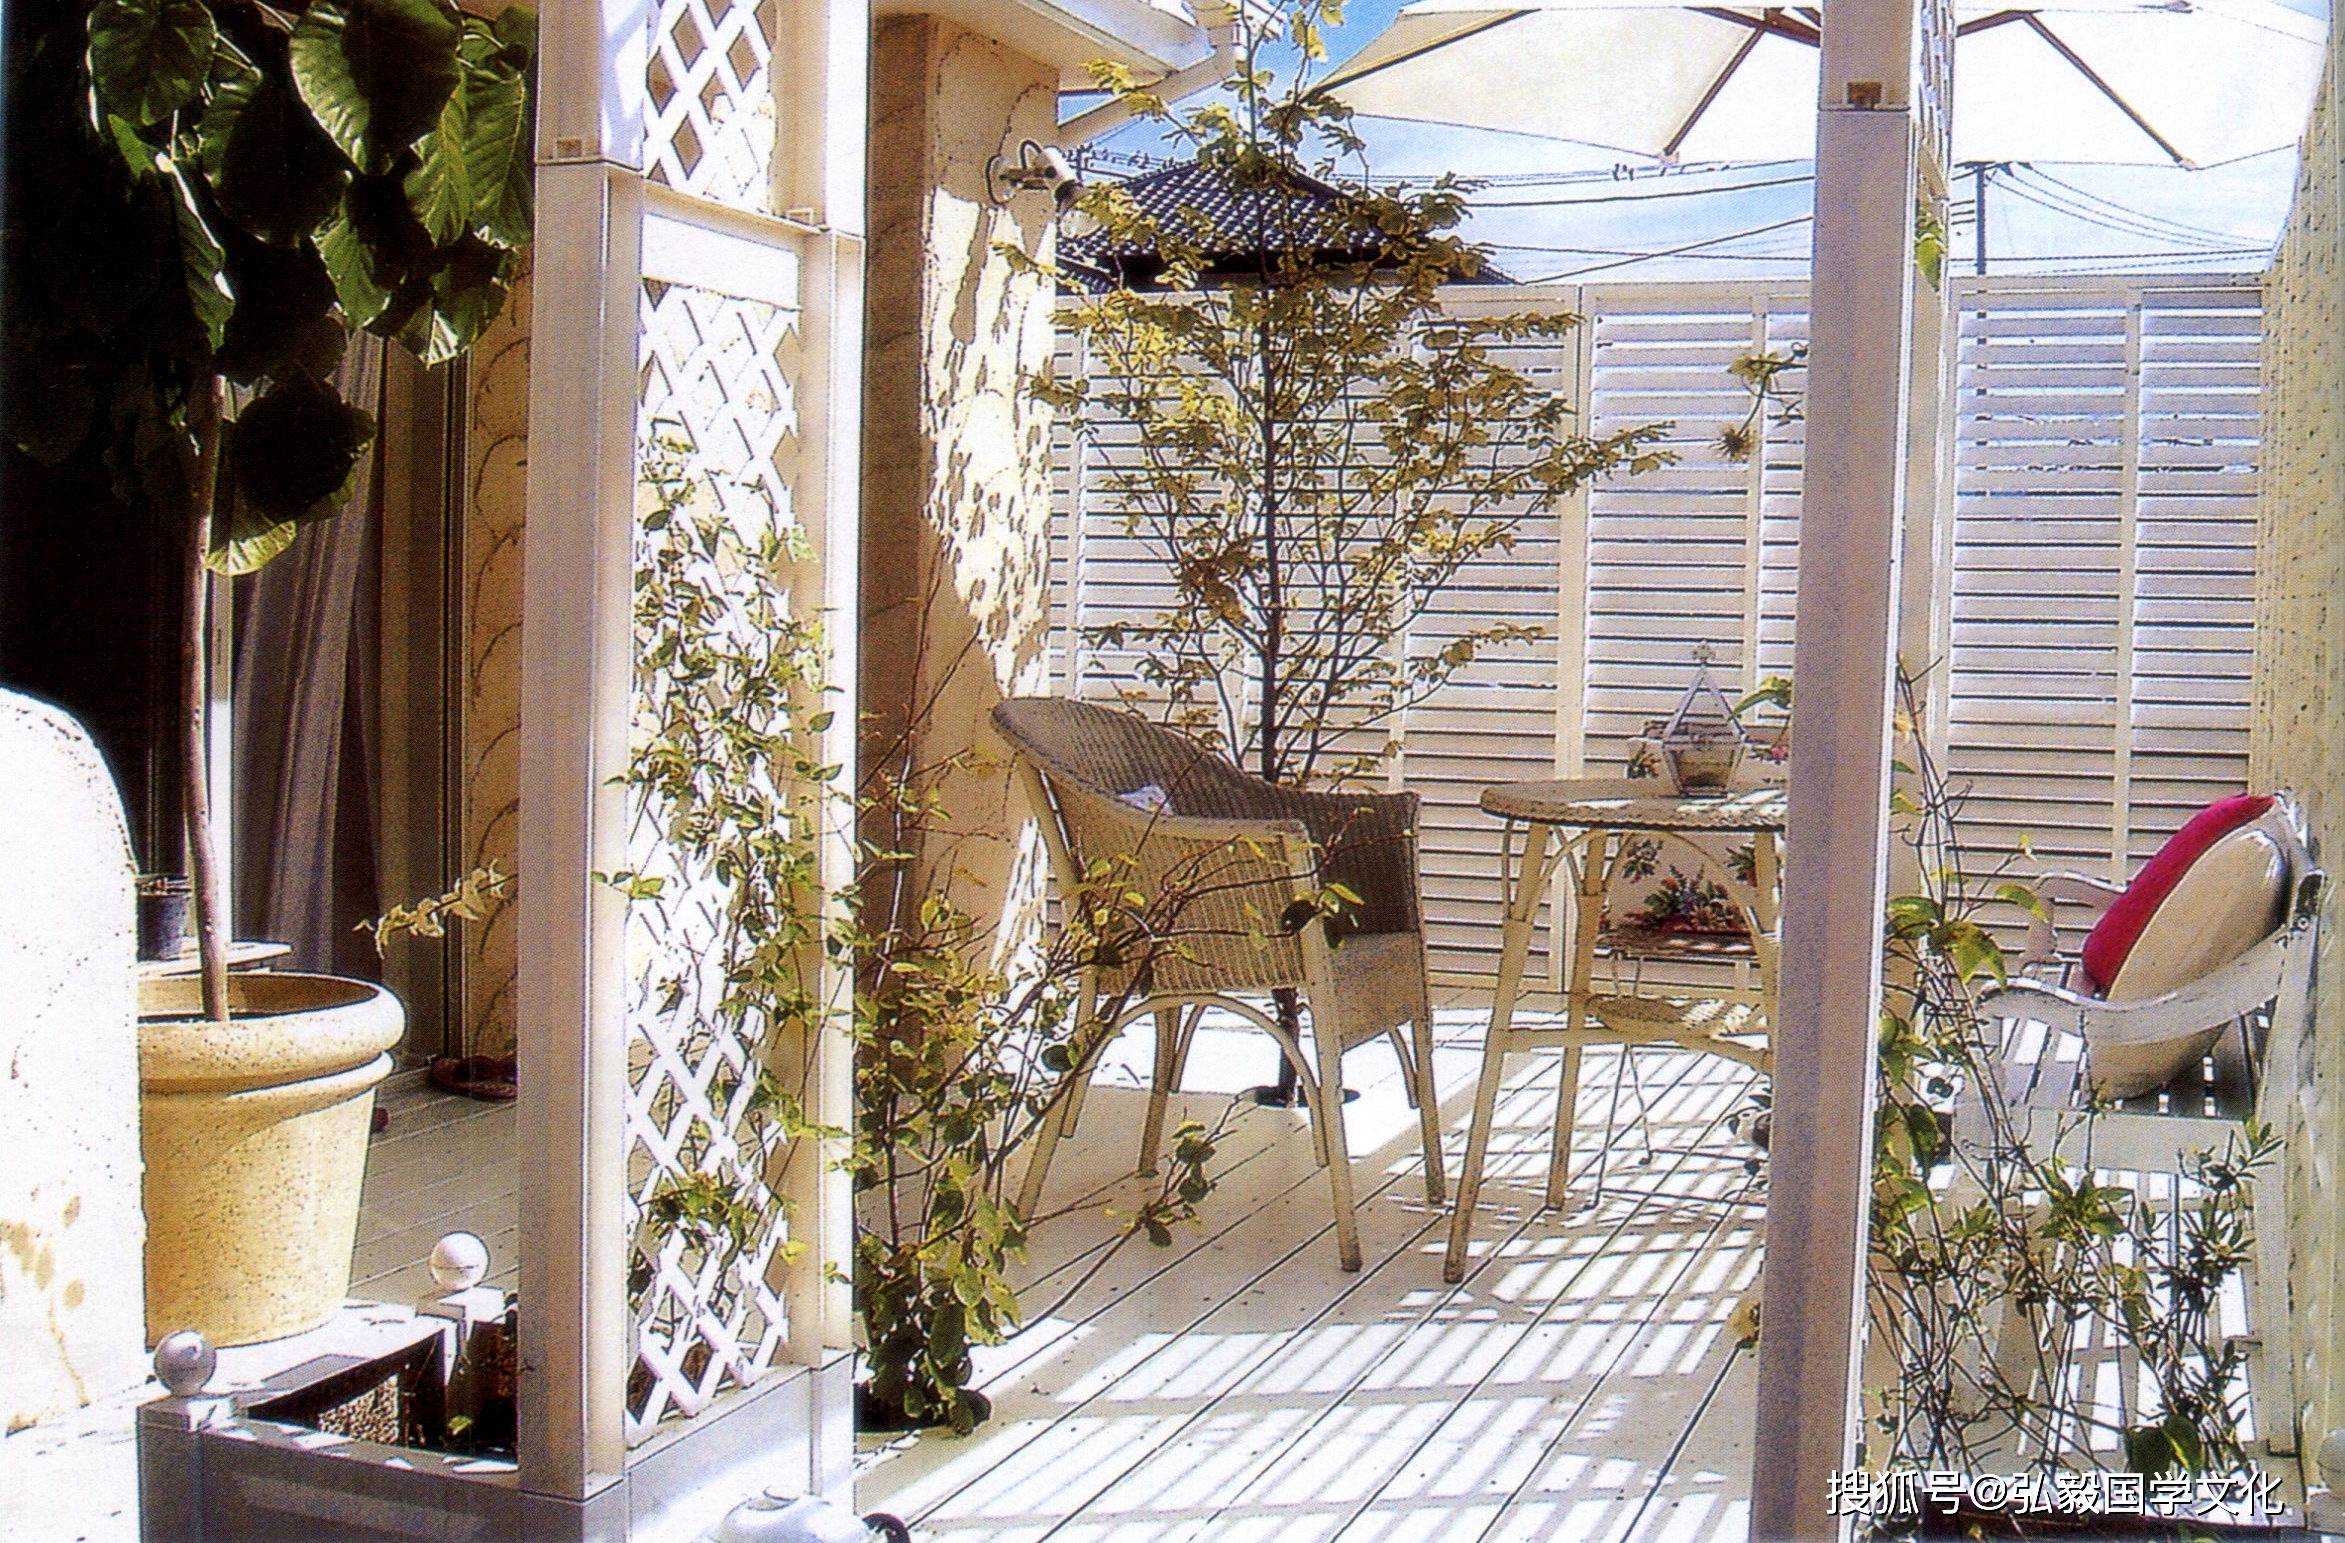 复古与自然完美组合的庭院,白色系带来生活的温暖